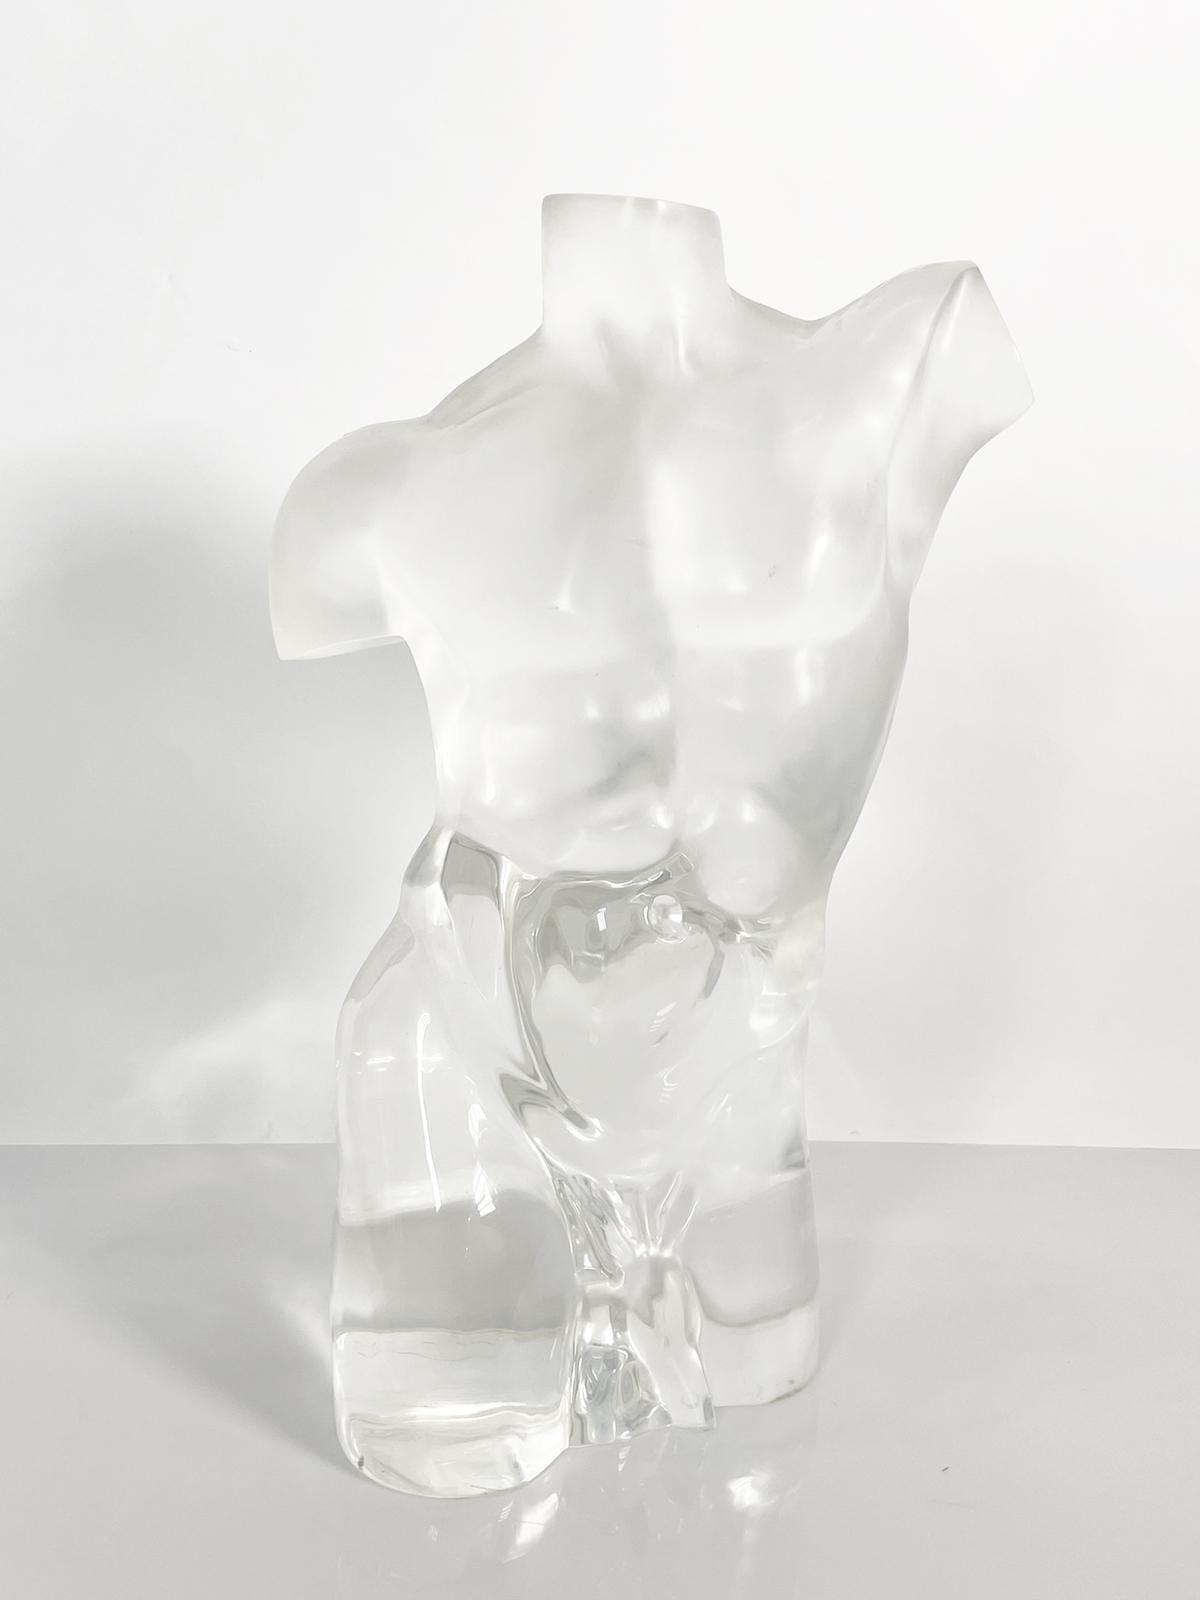 Voici notre superbe sculpture d'homme nu en lucite solide, datant des années 1970. Ce meuble unique en son genre est un véritable chef-d'œuvre, fabriqué de manière experte pour capturer l'essence de la forme humaine. La sculpture est fabriquée en